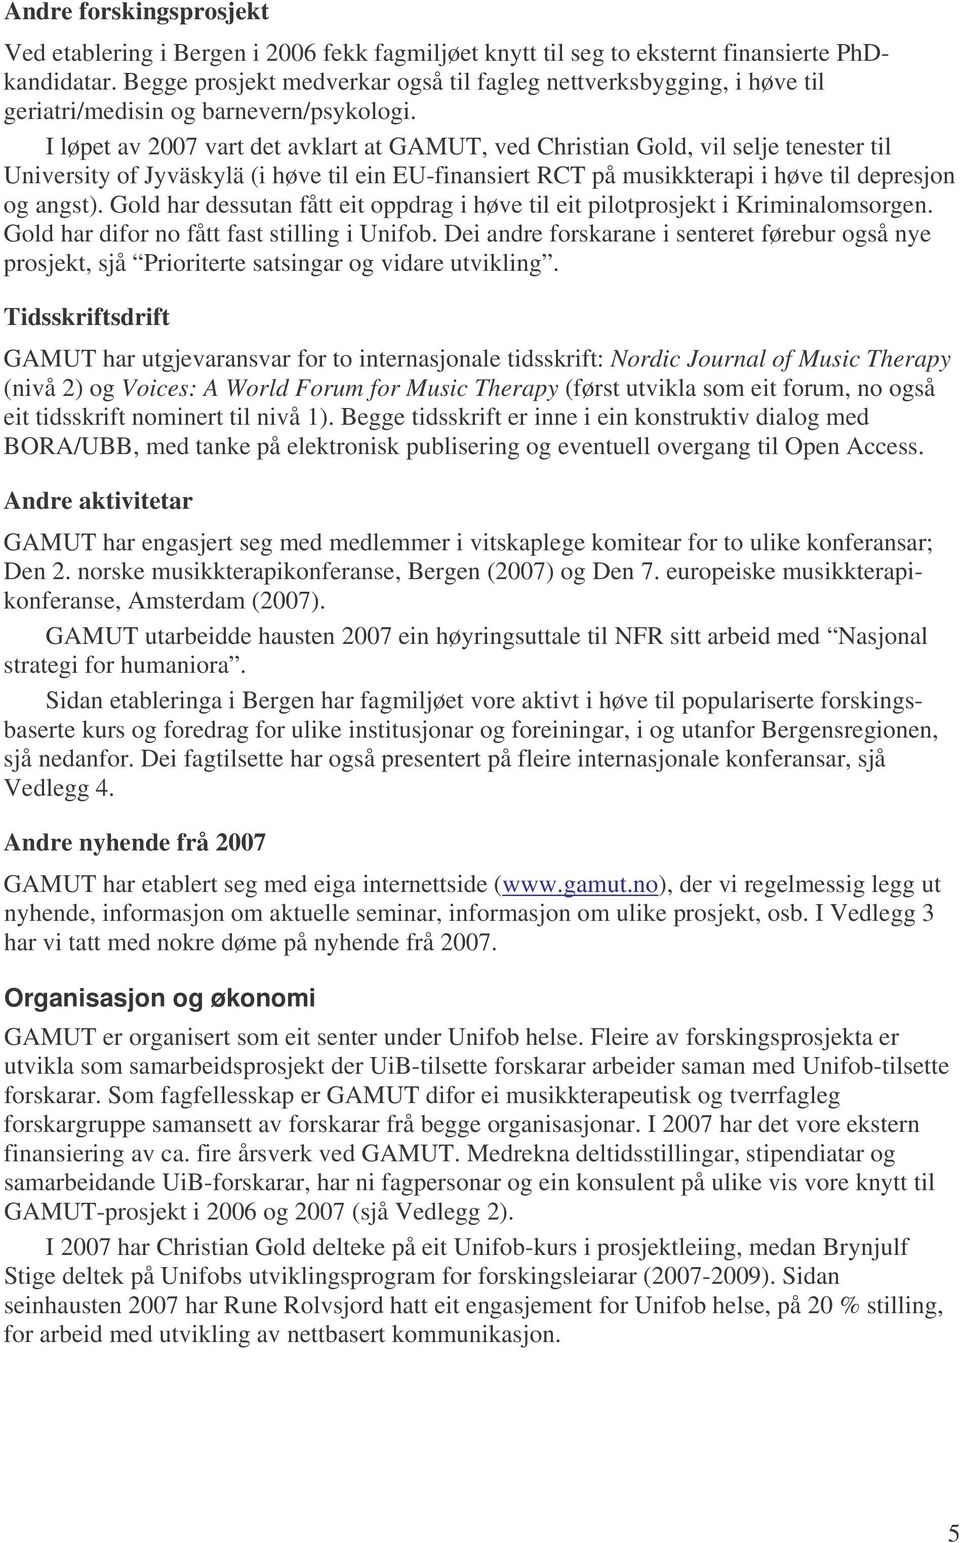 I løpet av 2007 vart det avklart at GAMUT, ved Christian Gold, vil selje tenester til University of Jyväskylä (i høve til ein EU-finansiert RCT på musikkterapi i høve til depresjon og angst).